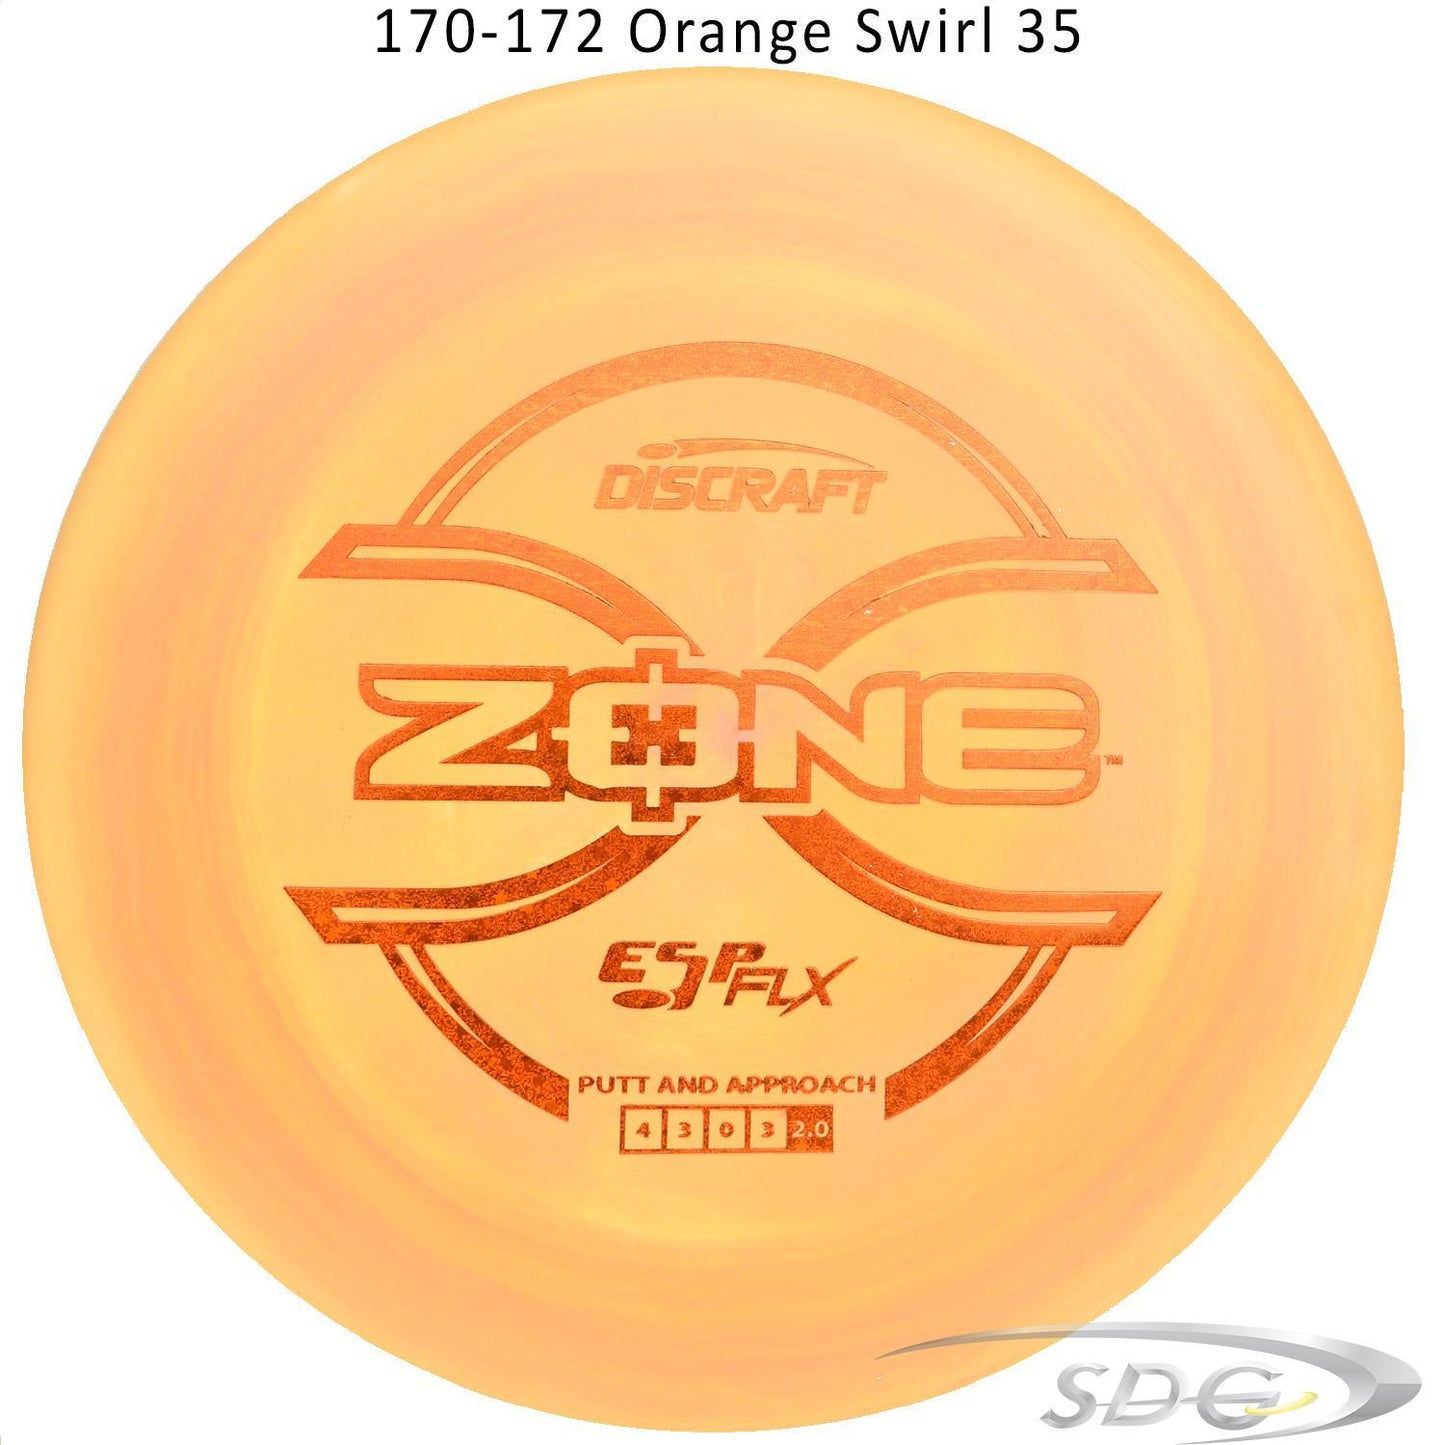 discraft-esp-flx-zone-disc-golf-putter 170-172 Orange Swirl 35 